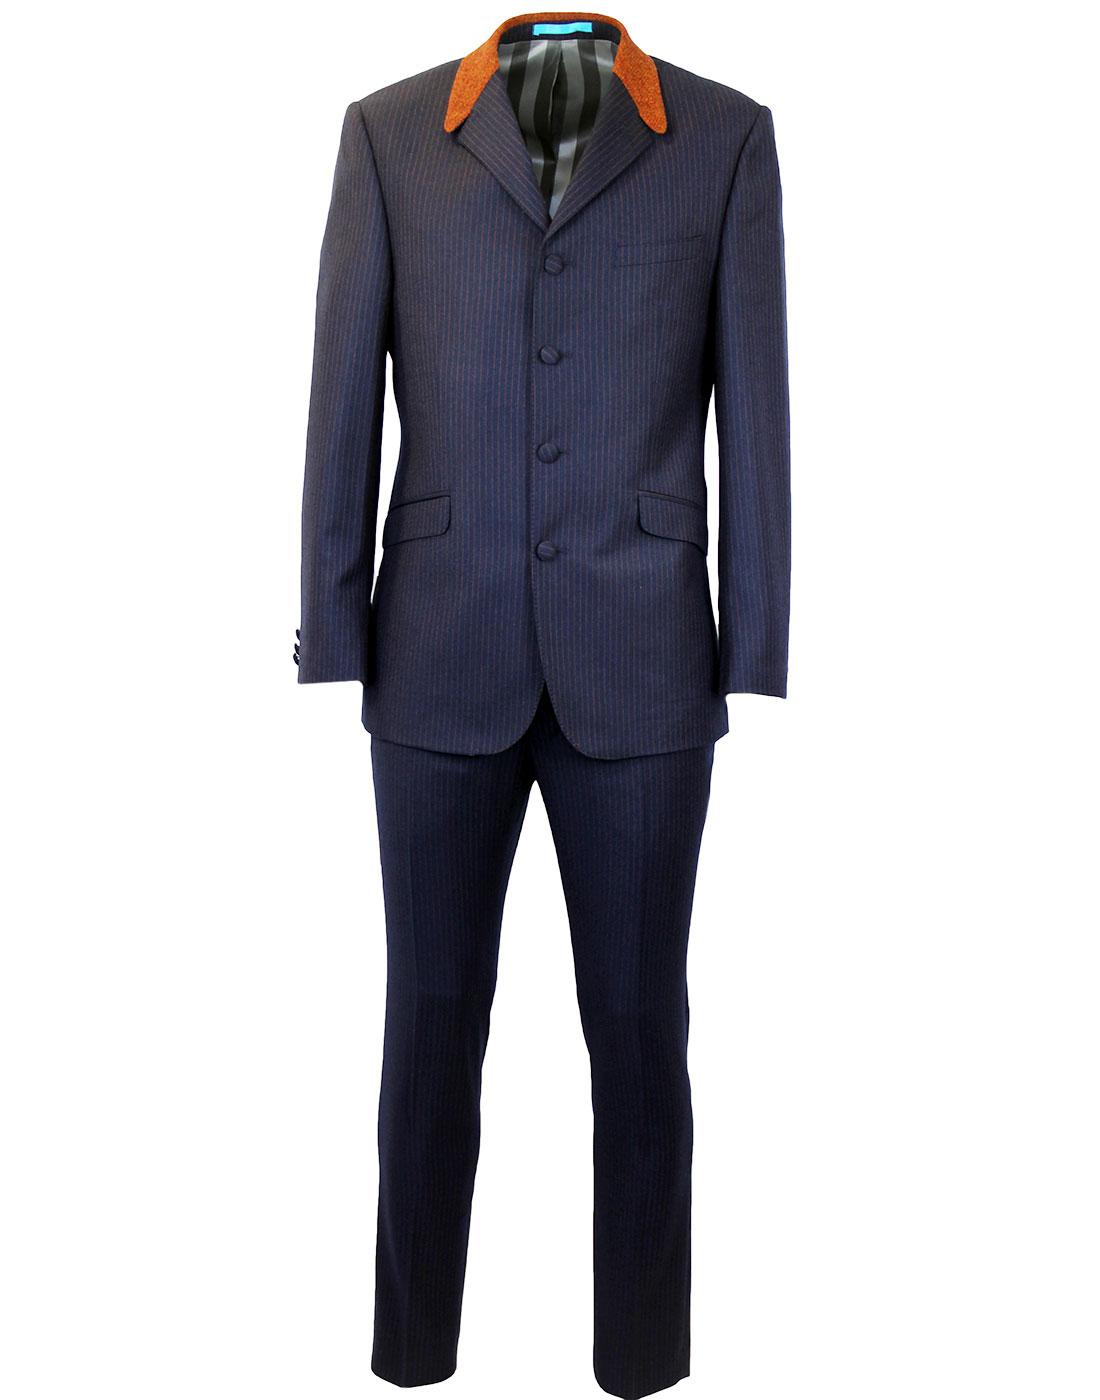 MADCAP ENGLAND Mod Flannel Stripe 4 Button Suit 